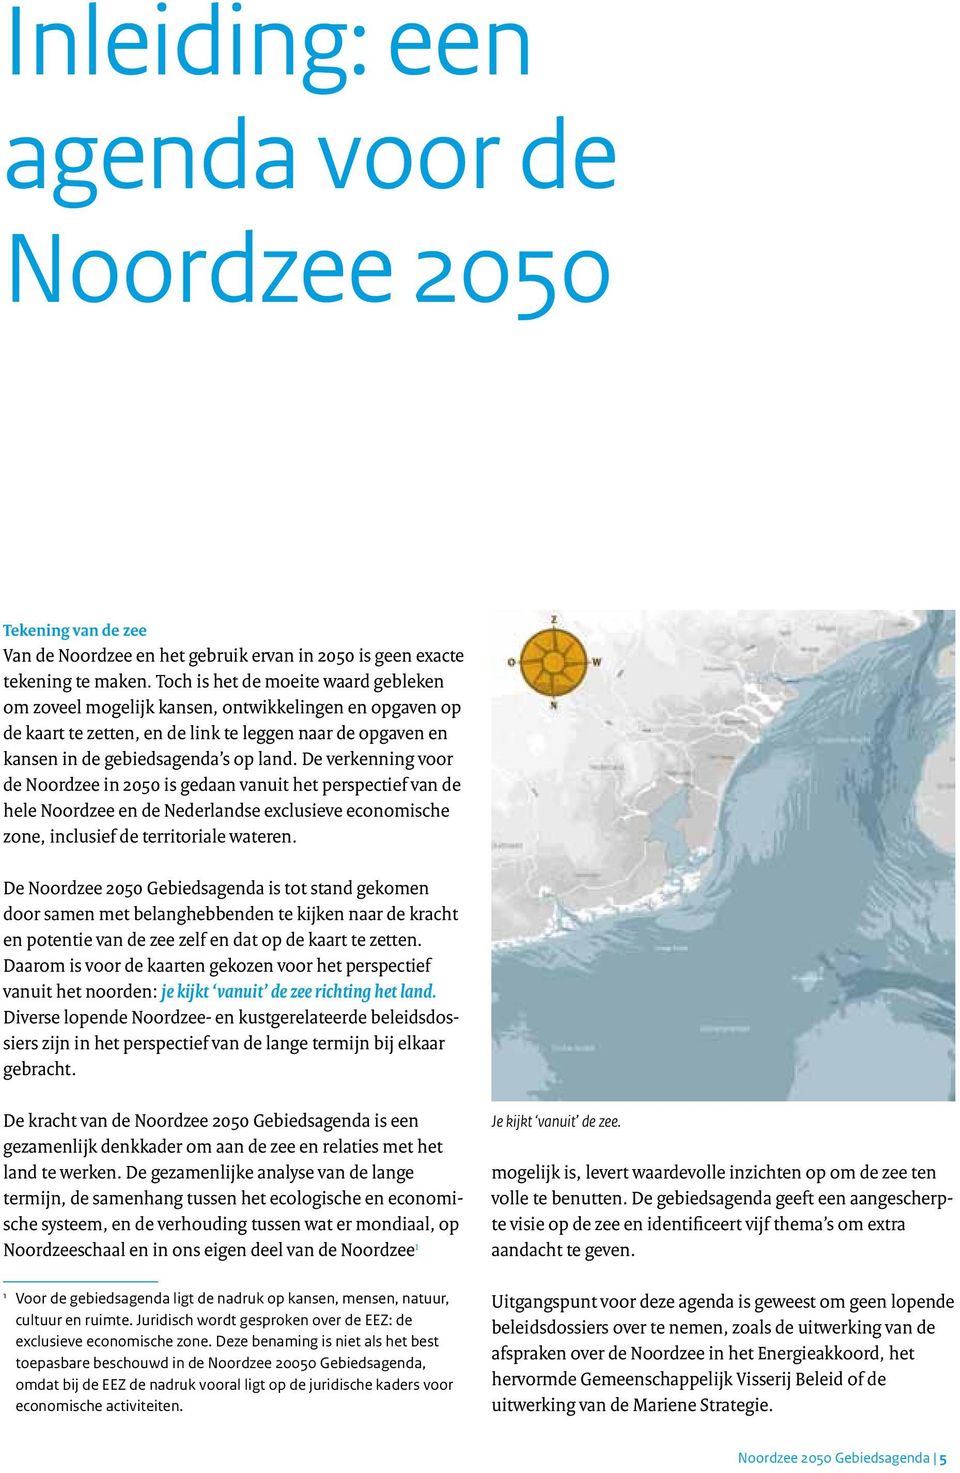 De verkenning voor de Noordzee in 2050 is gedaan vanuit het perspectief van de hele Noordzee en de Nederlandse exclusieve economische zone, inclusief de territoriale wateren.